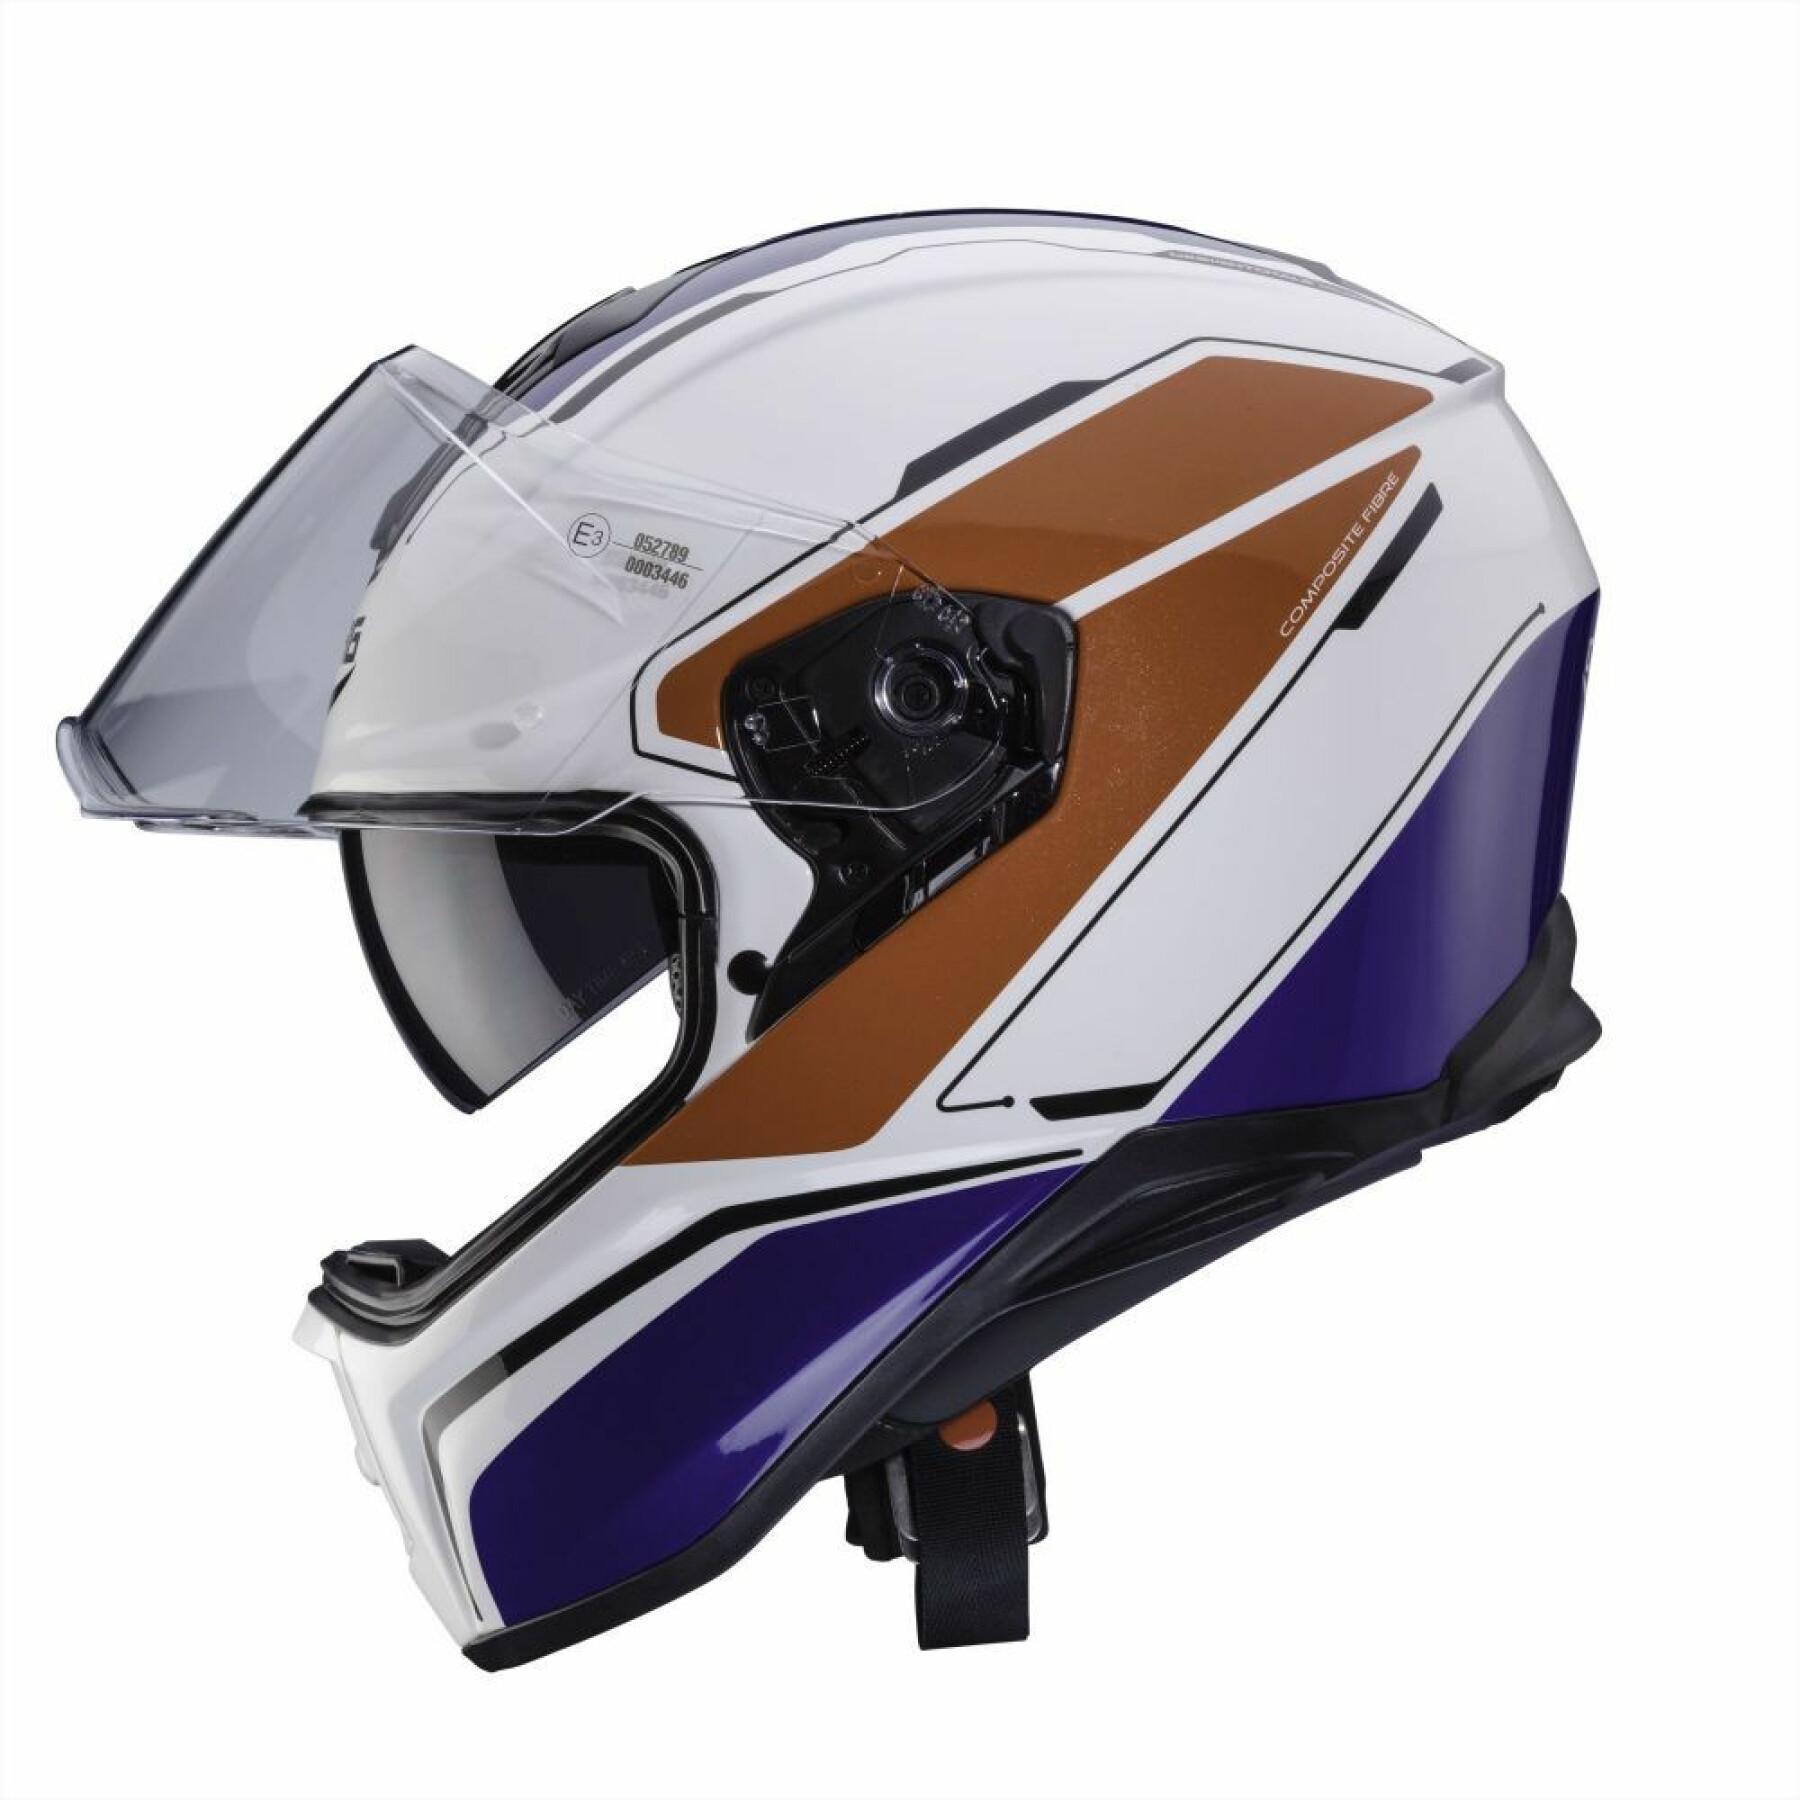 Full face motorcycle helmet Caberg drift flux